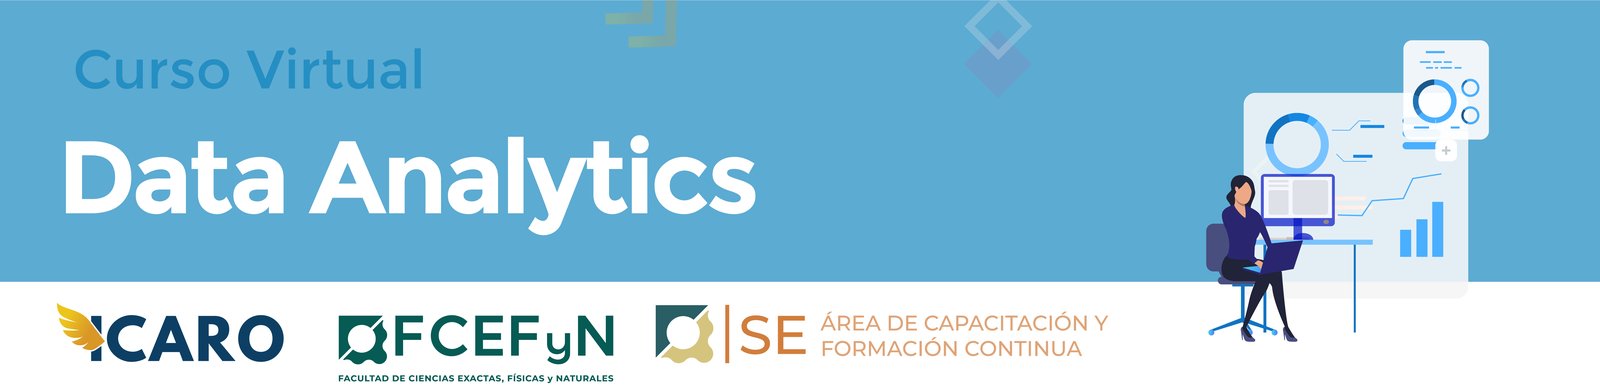 ICARO - Data analytics